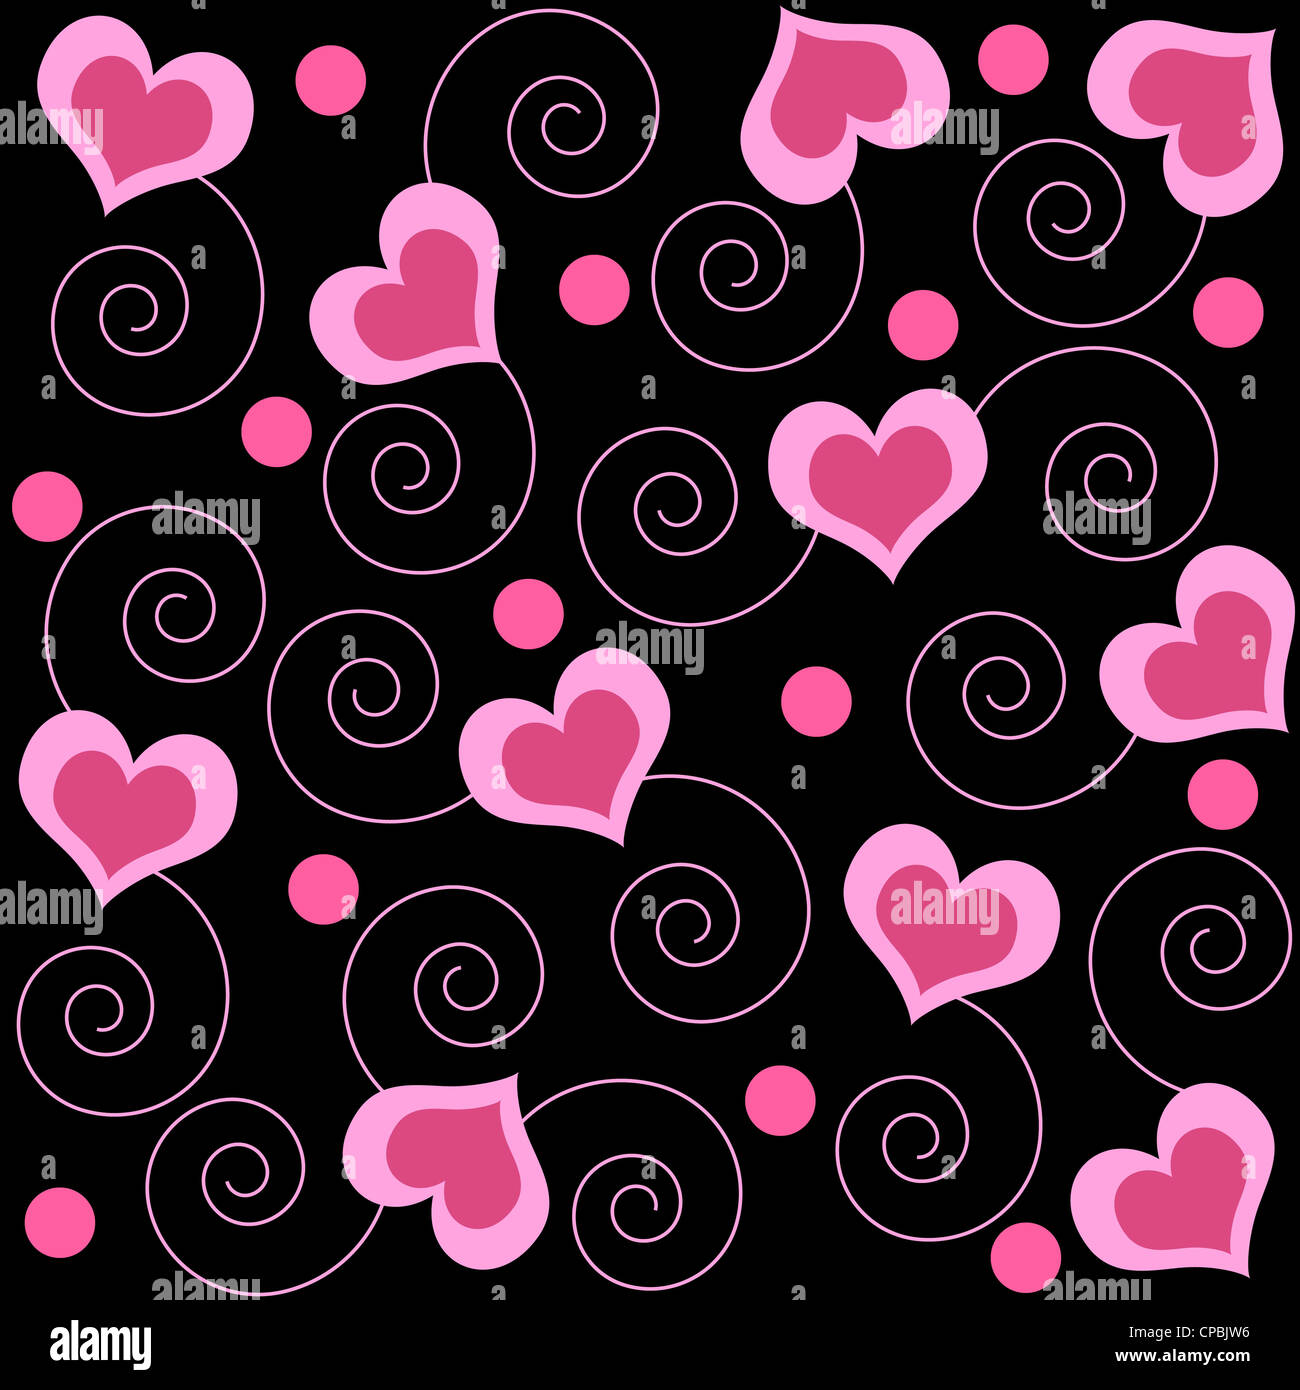 Pink hearts and swirls pattern Stock Photo